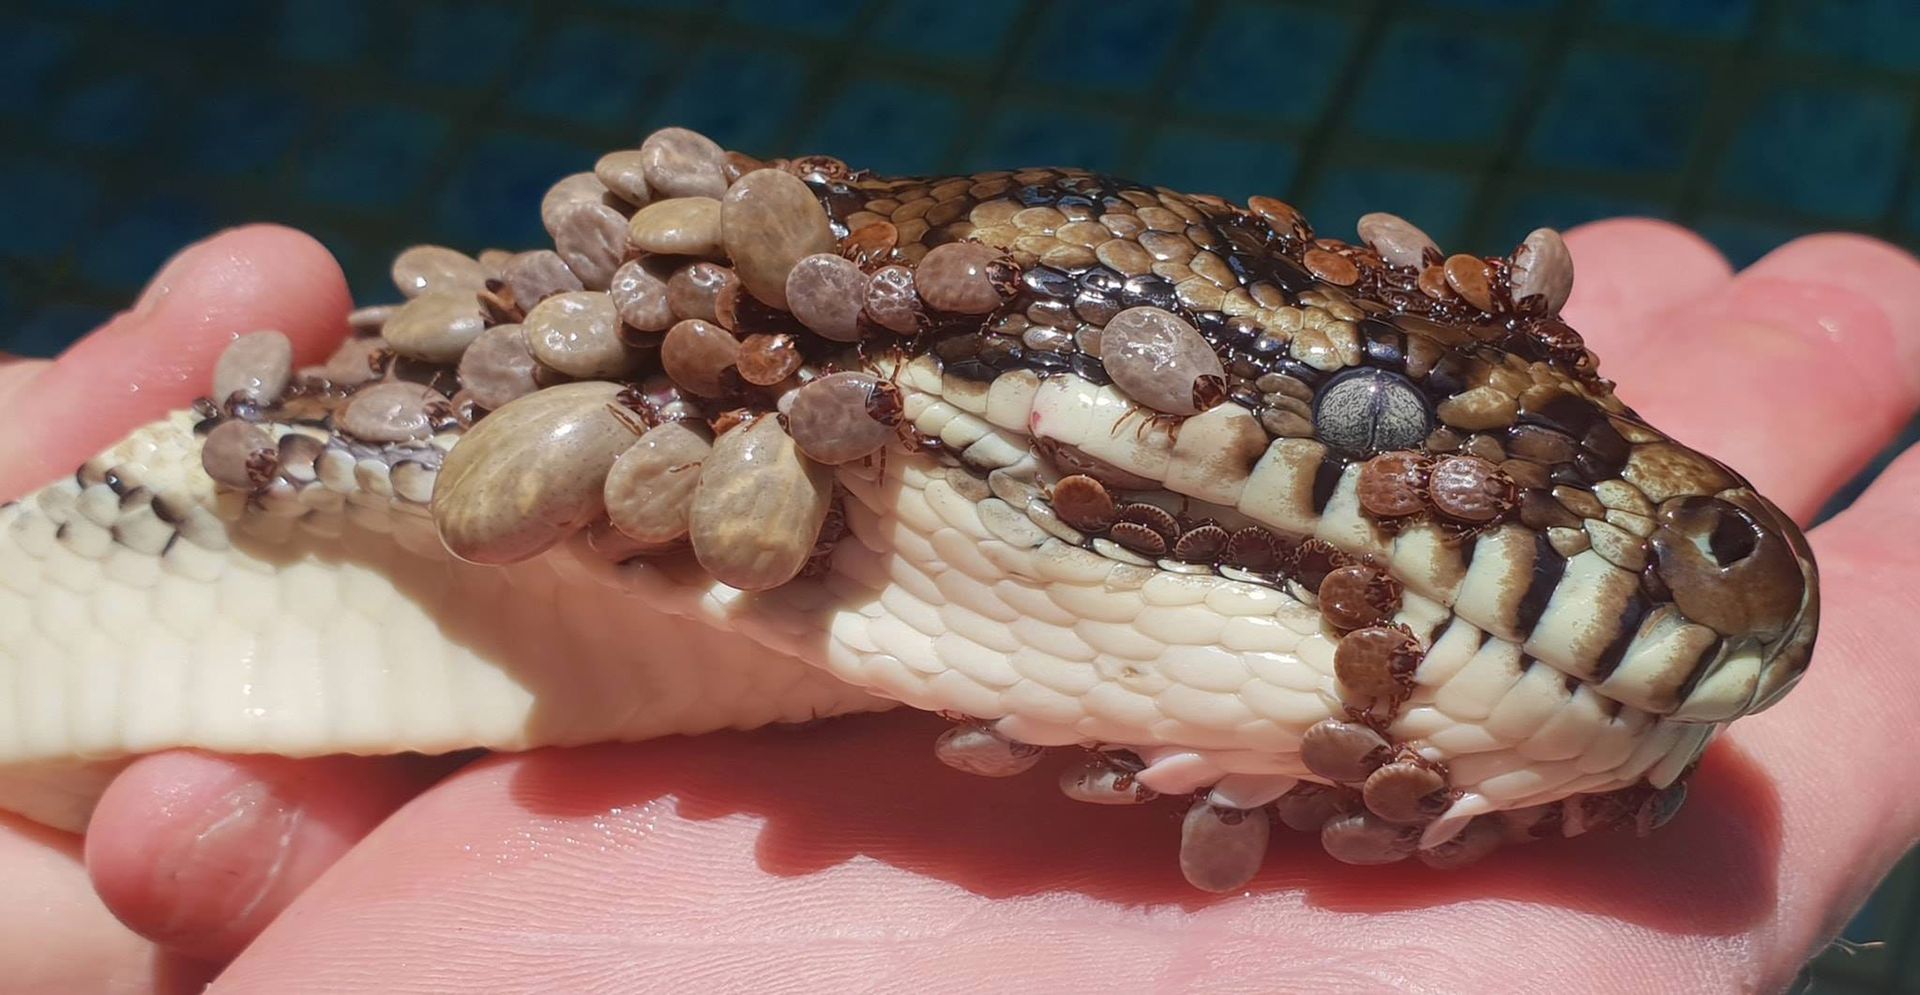 500 kleszczy na wężu. Australijczyk uratował gada